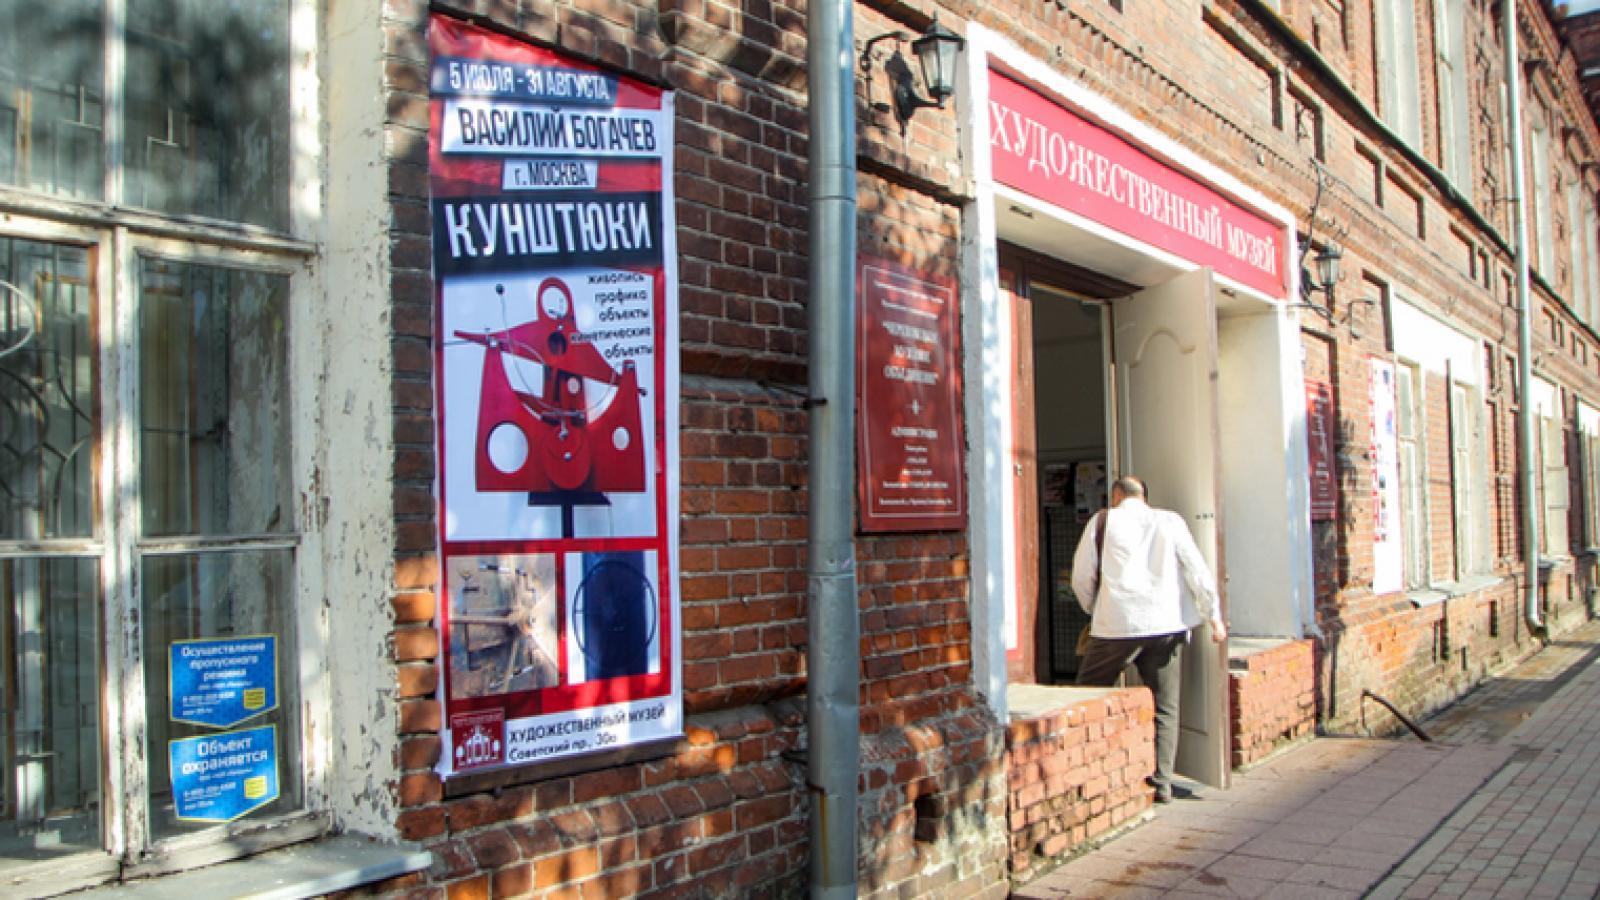 Художественный музей в Череповце закрылся на ремонт